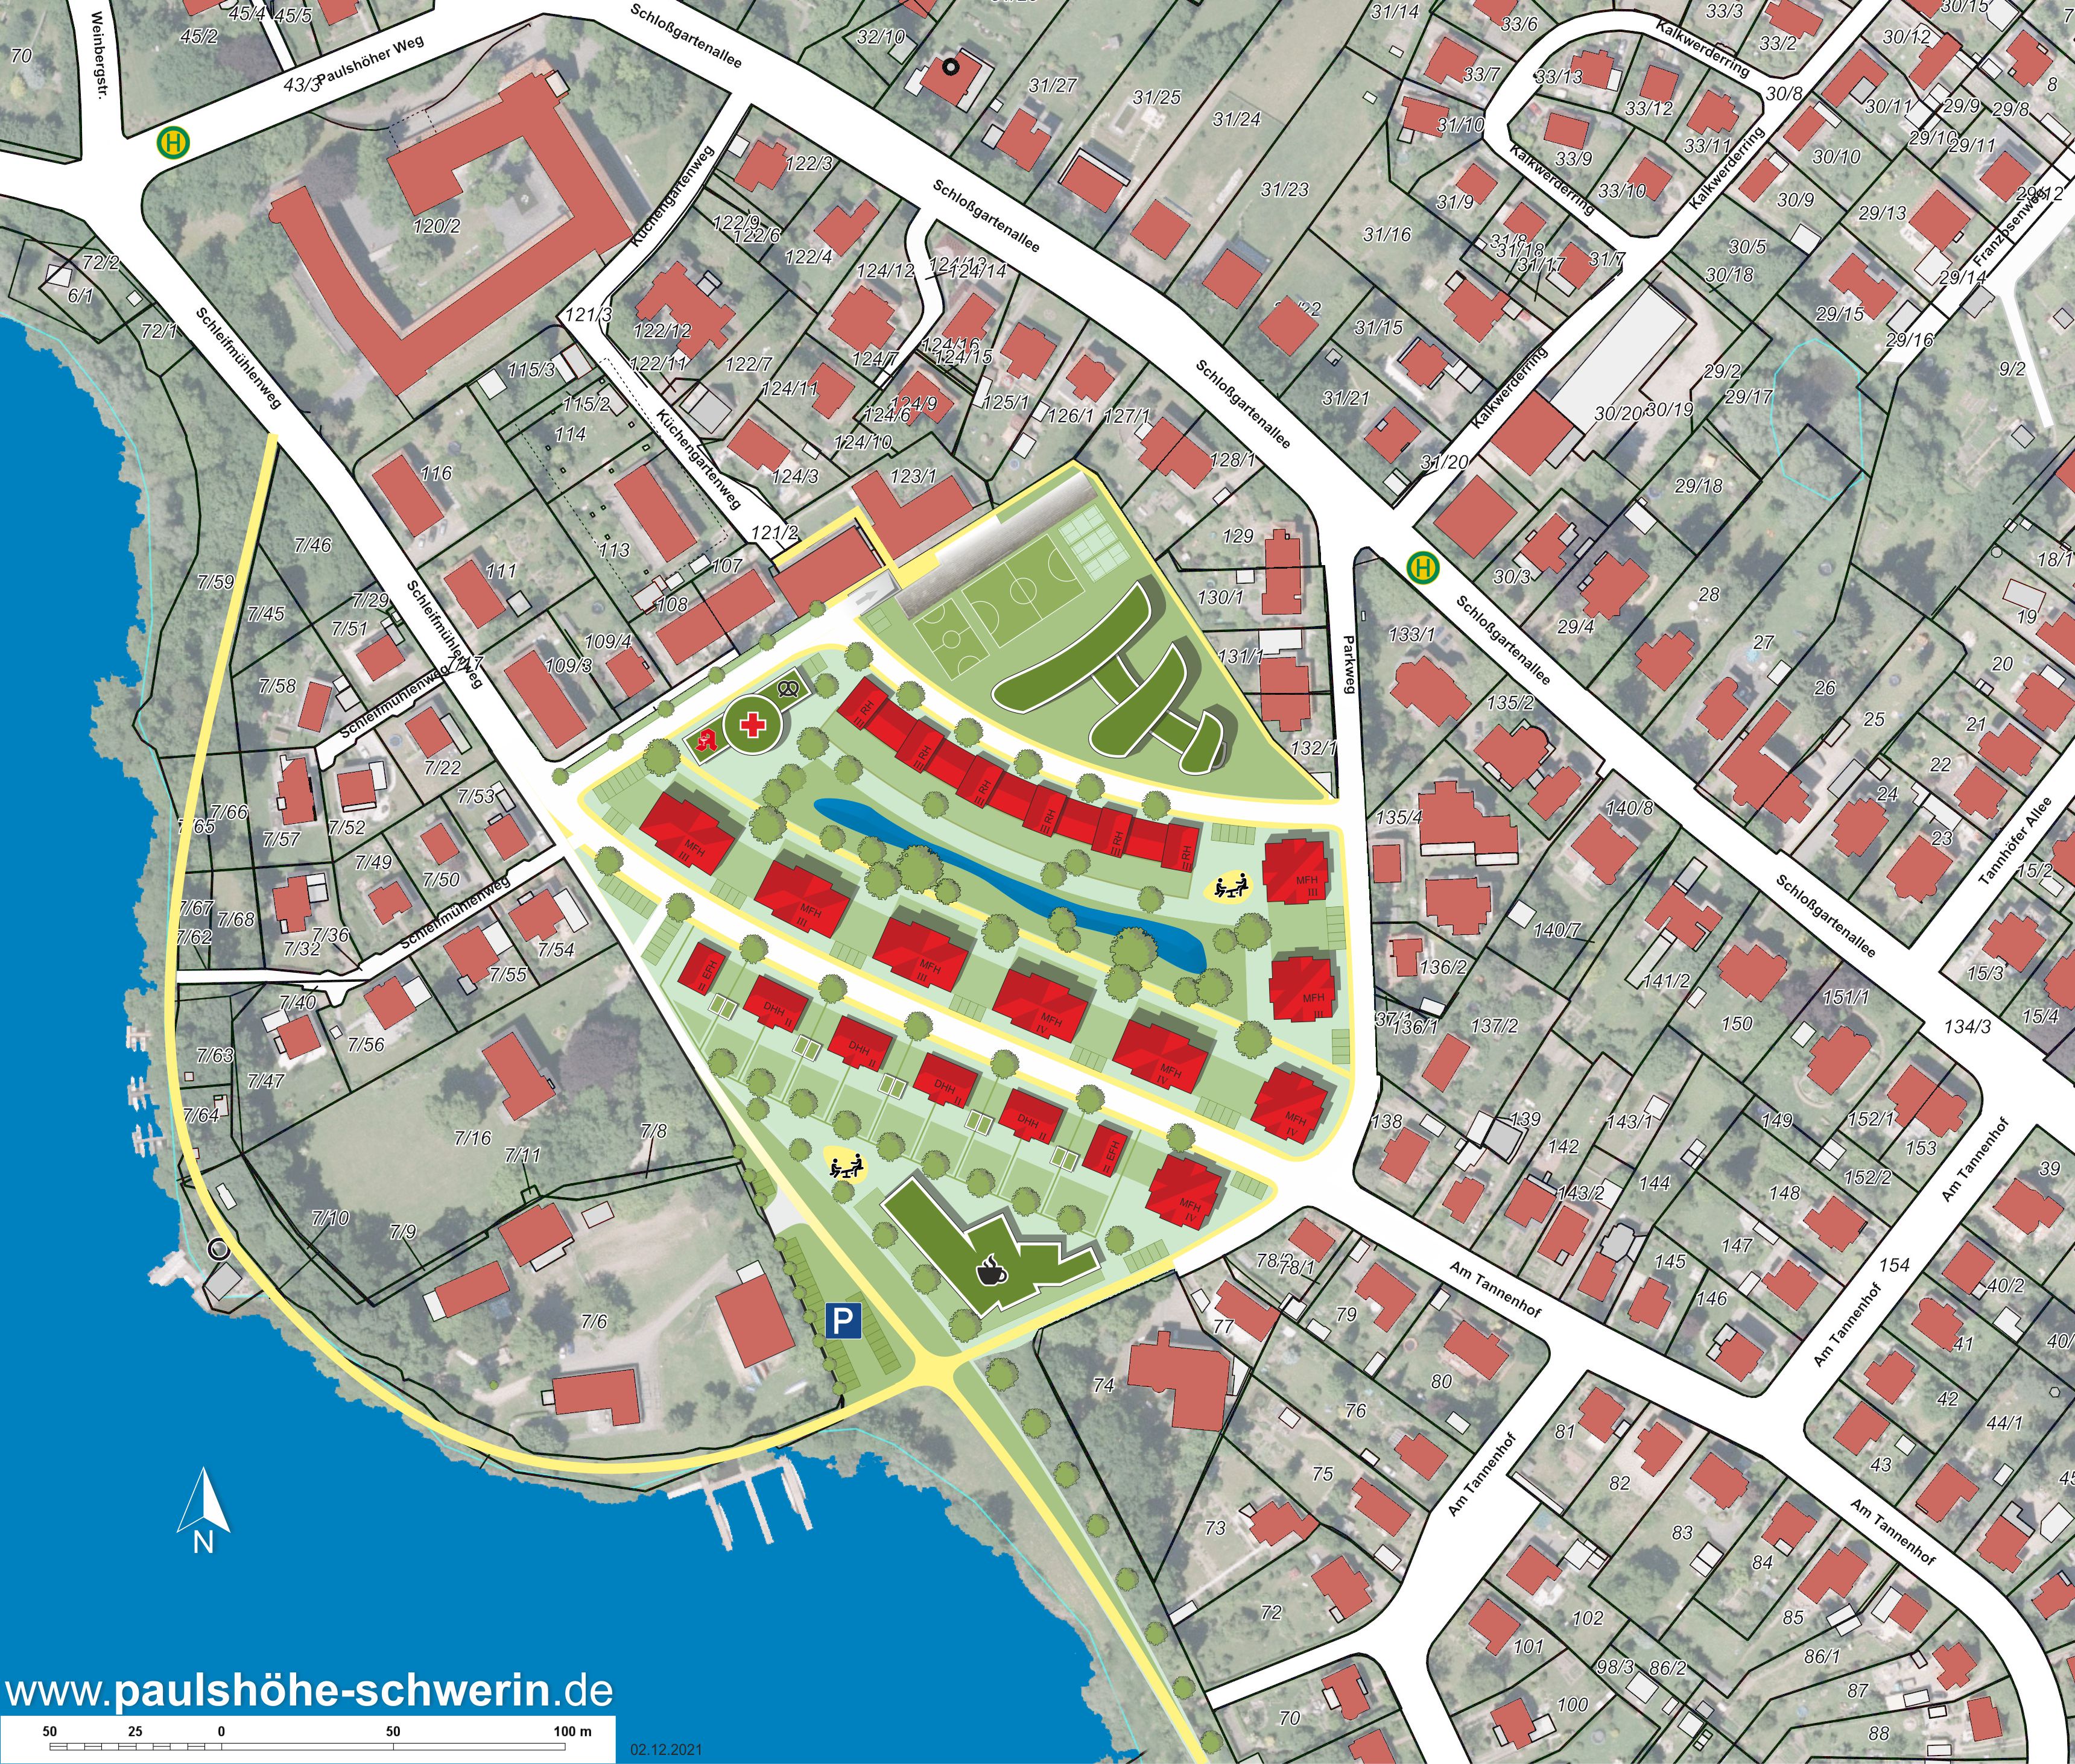 Vorschlag für B-Plan Wohnpark Paulshöhe